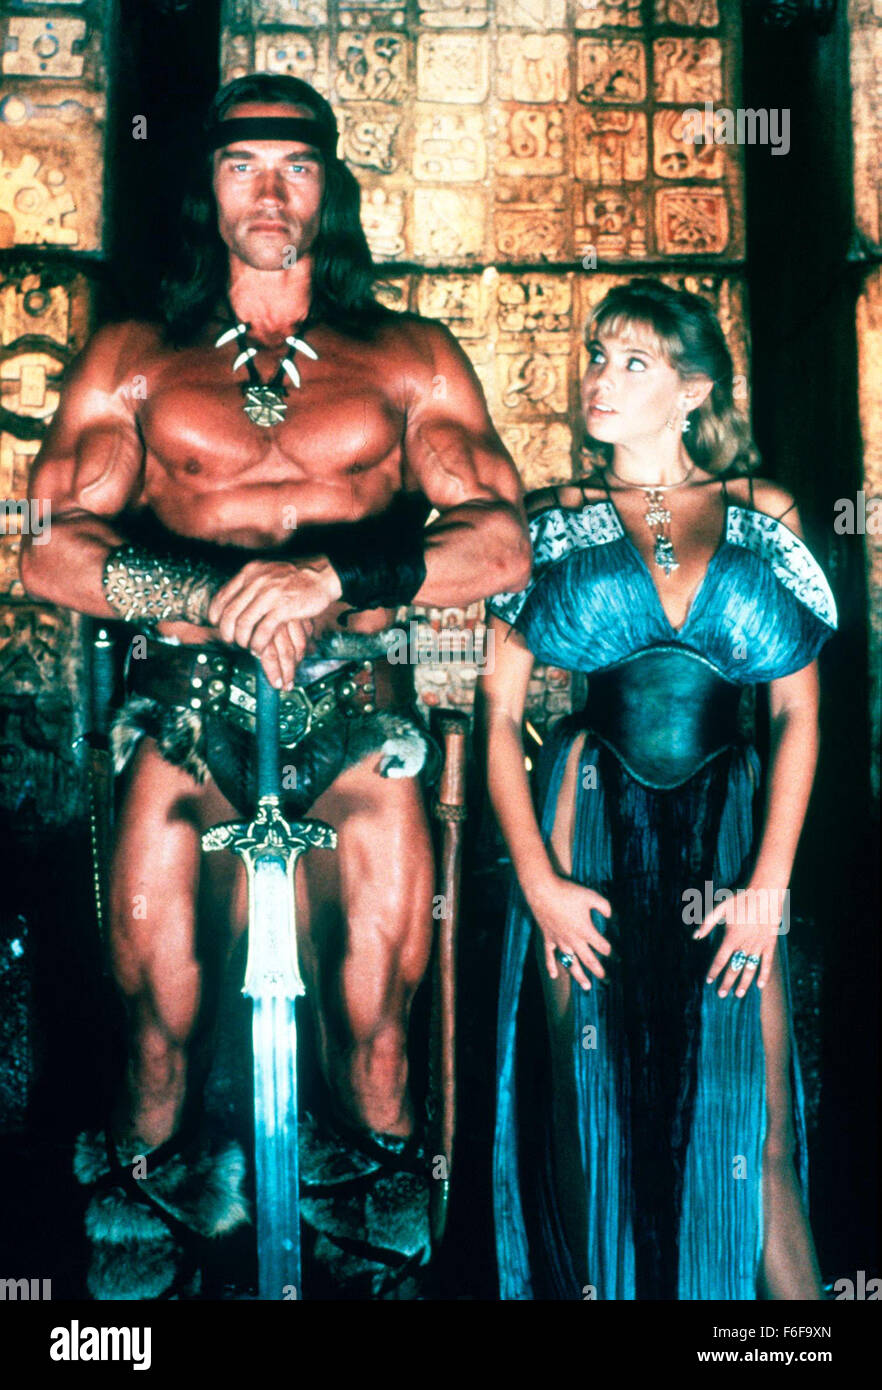 Jun 11, 1984; Hollywood, CA, USA; Image from Richard Fleischer's action fantasy 'Conan the Destroyer' starring ARNOLD SCHWARZENEGGER as Conan and OLIVIA D'ABO as Princess Jehnna. Stock Photo